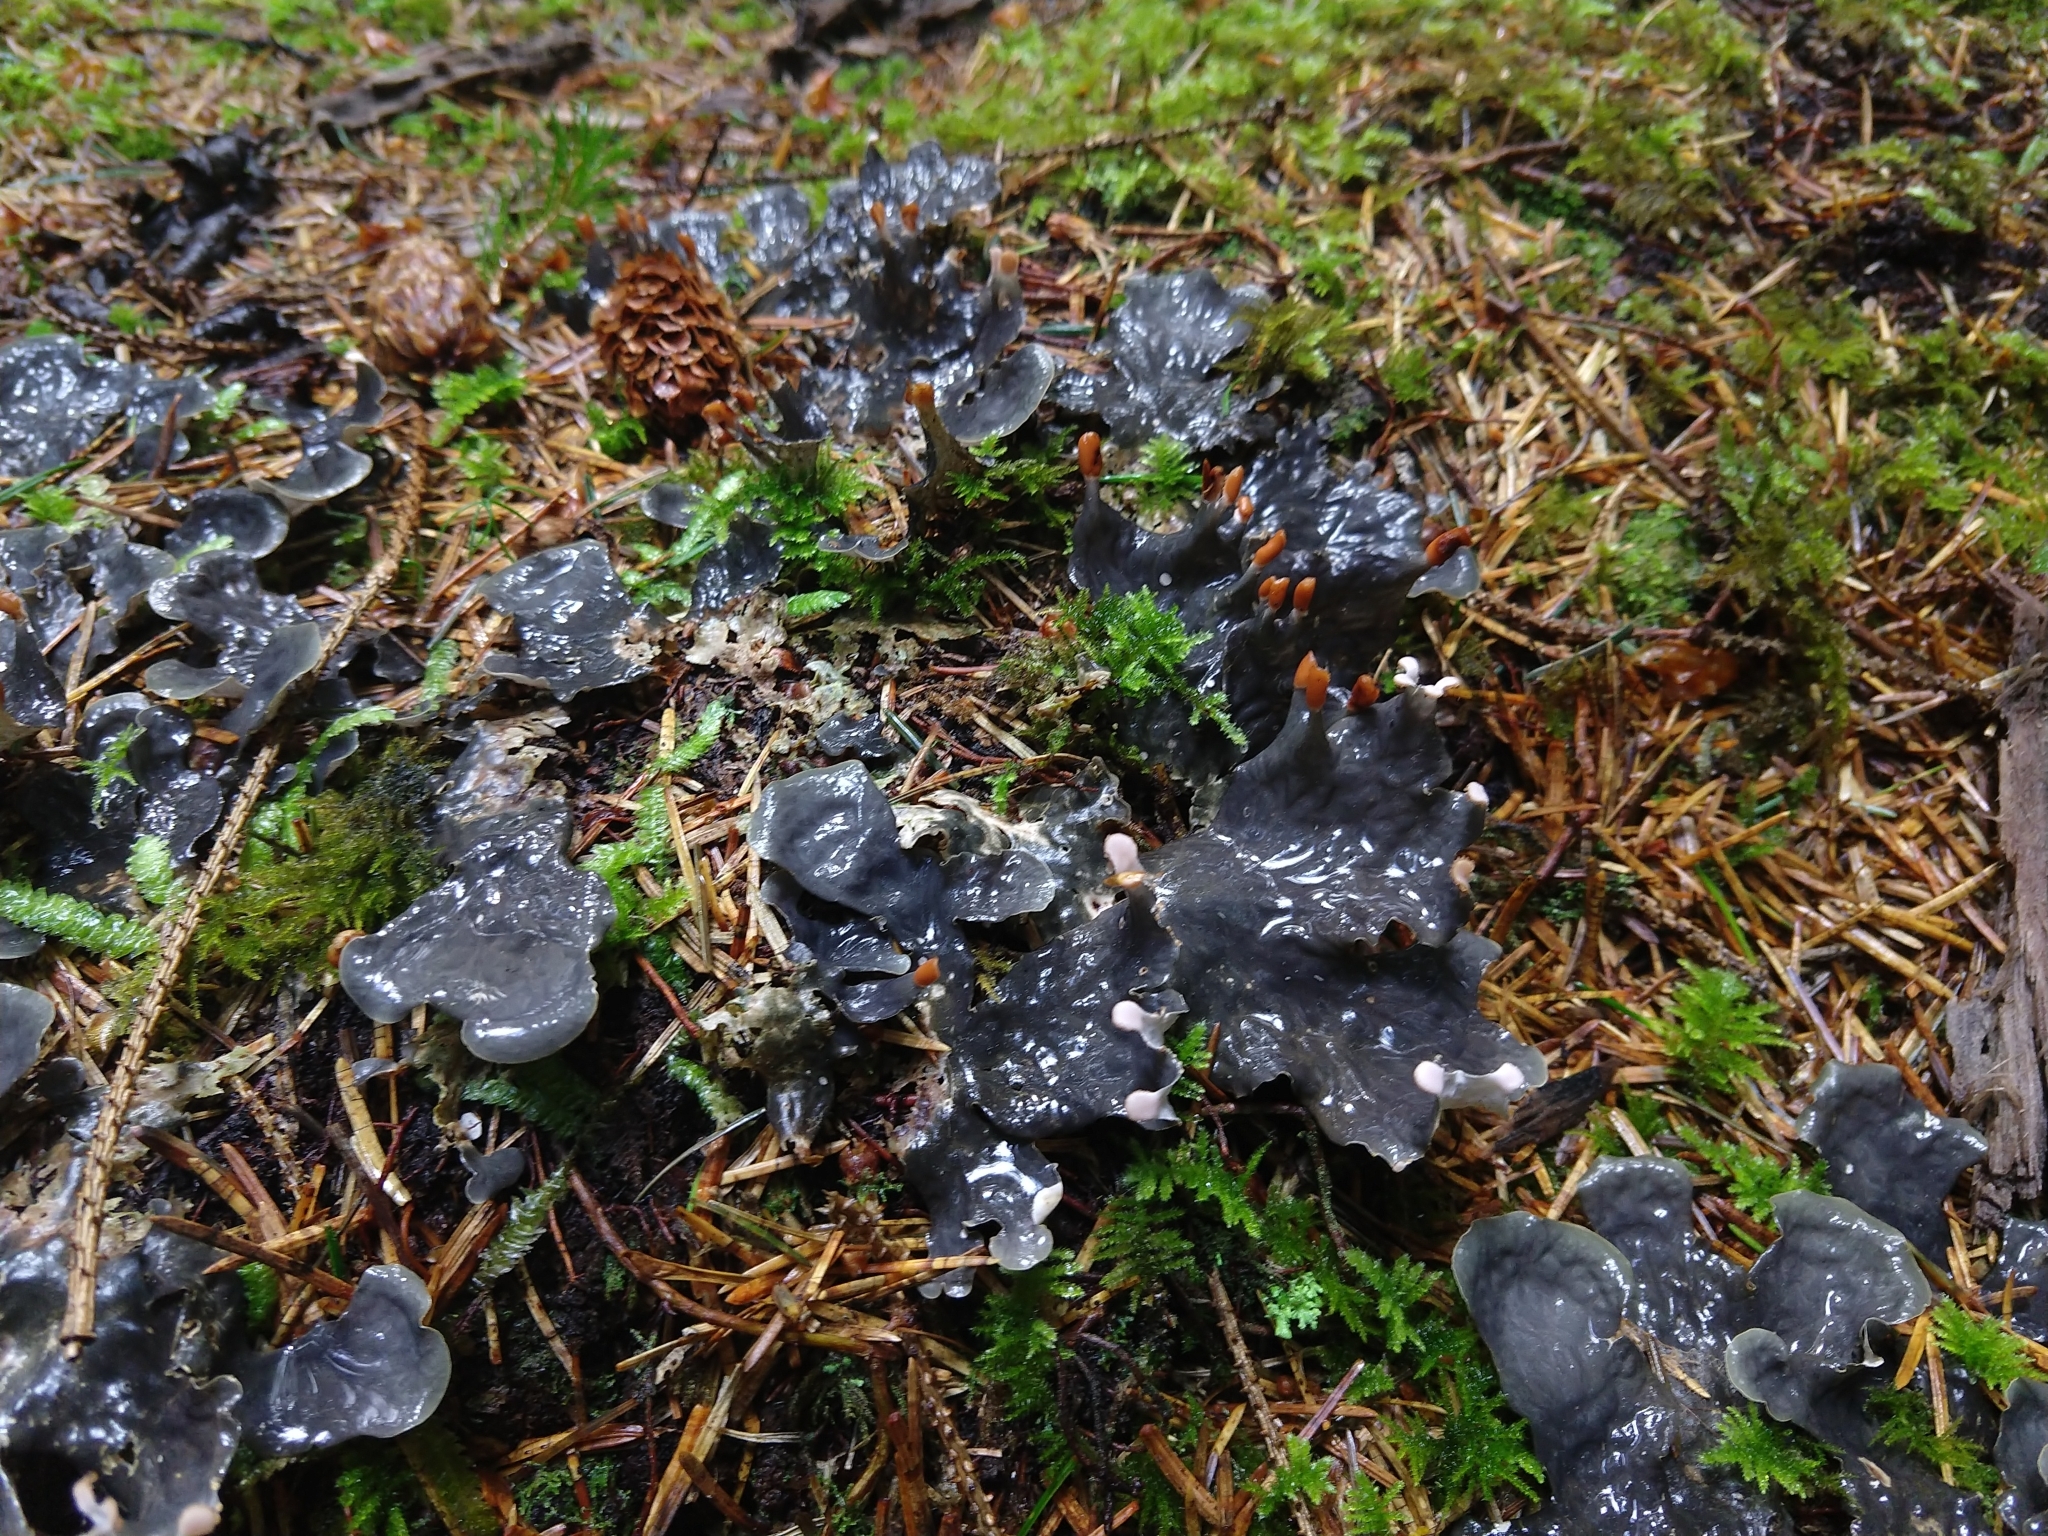 A dark bluish grey lichen growing flat against some moss on the ground